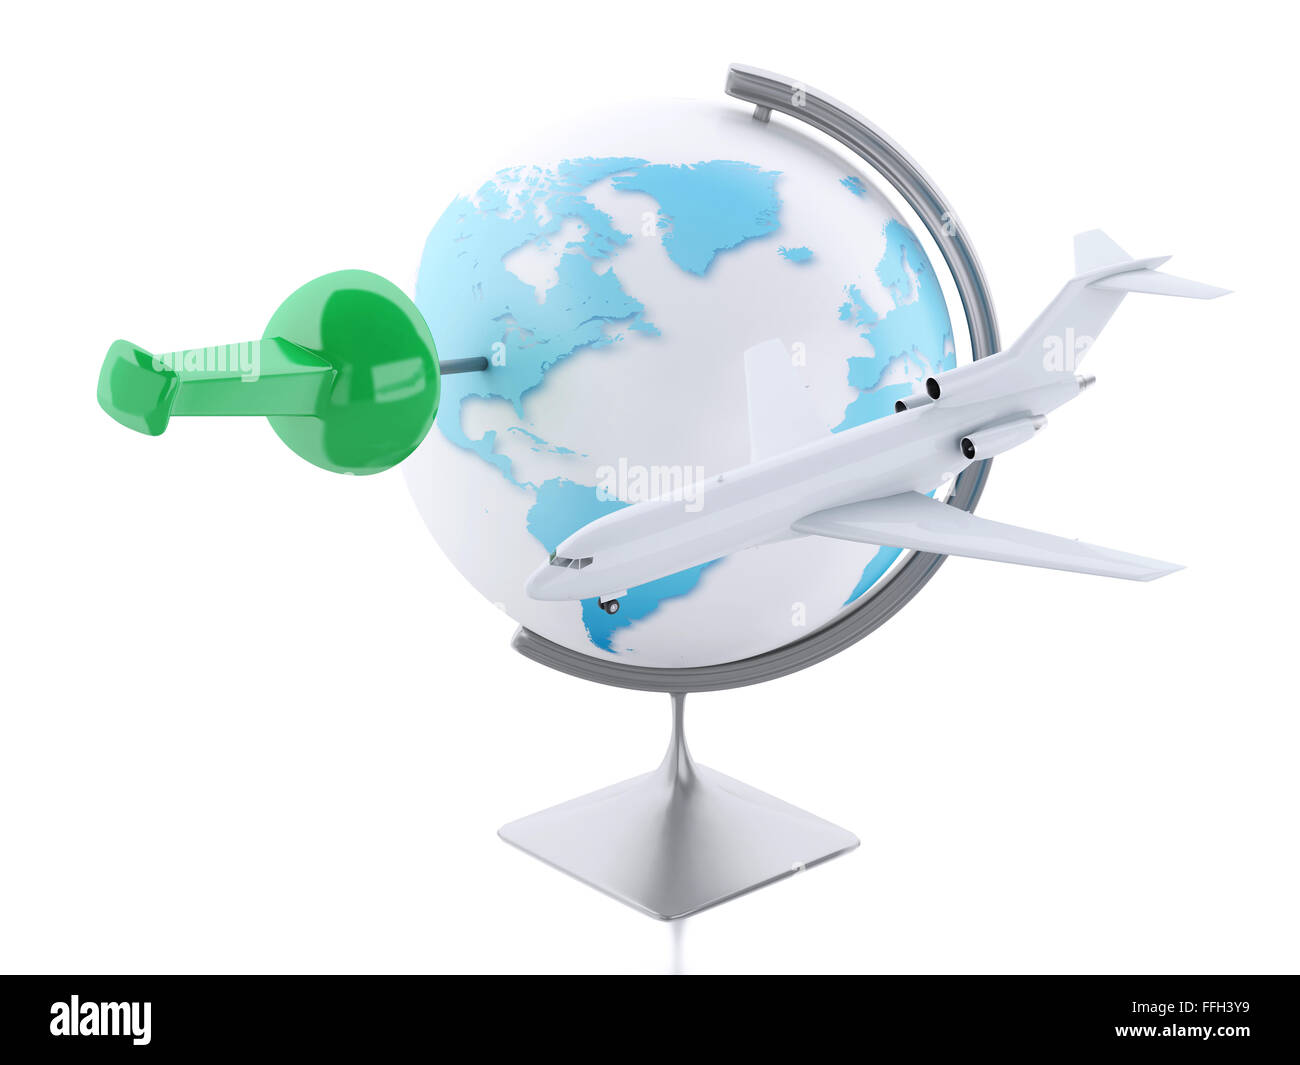 Moteur de rendu 3d image. Avion et world globe avec épingle. Voyage Vacances concept. Isolé sur fond blanc Banque D'Images